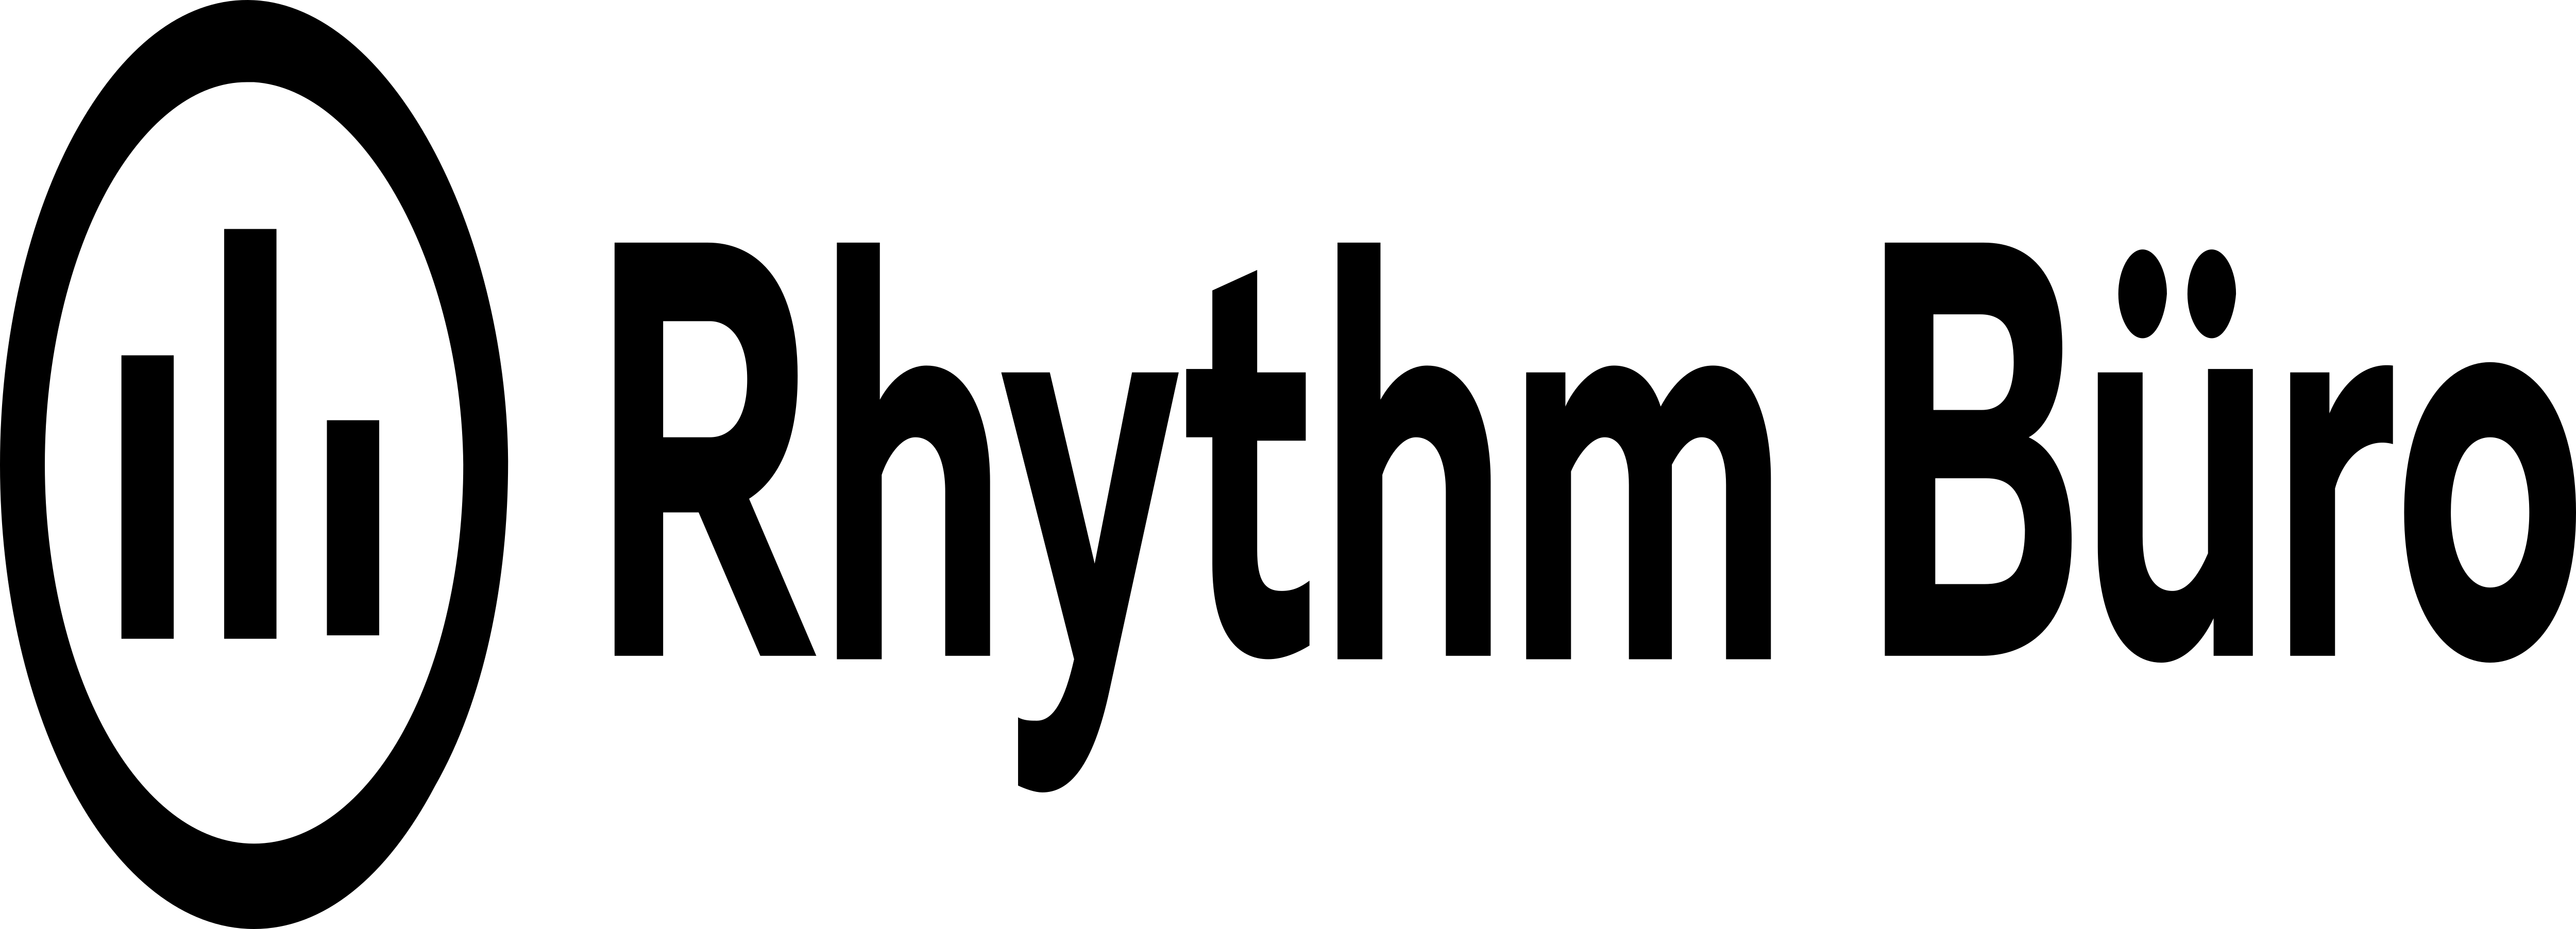 Rhythm Logo - Rhythm Büro – Logos Download